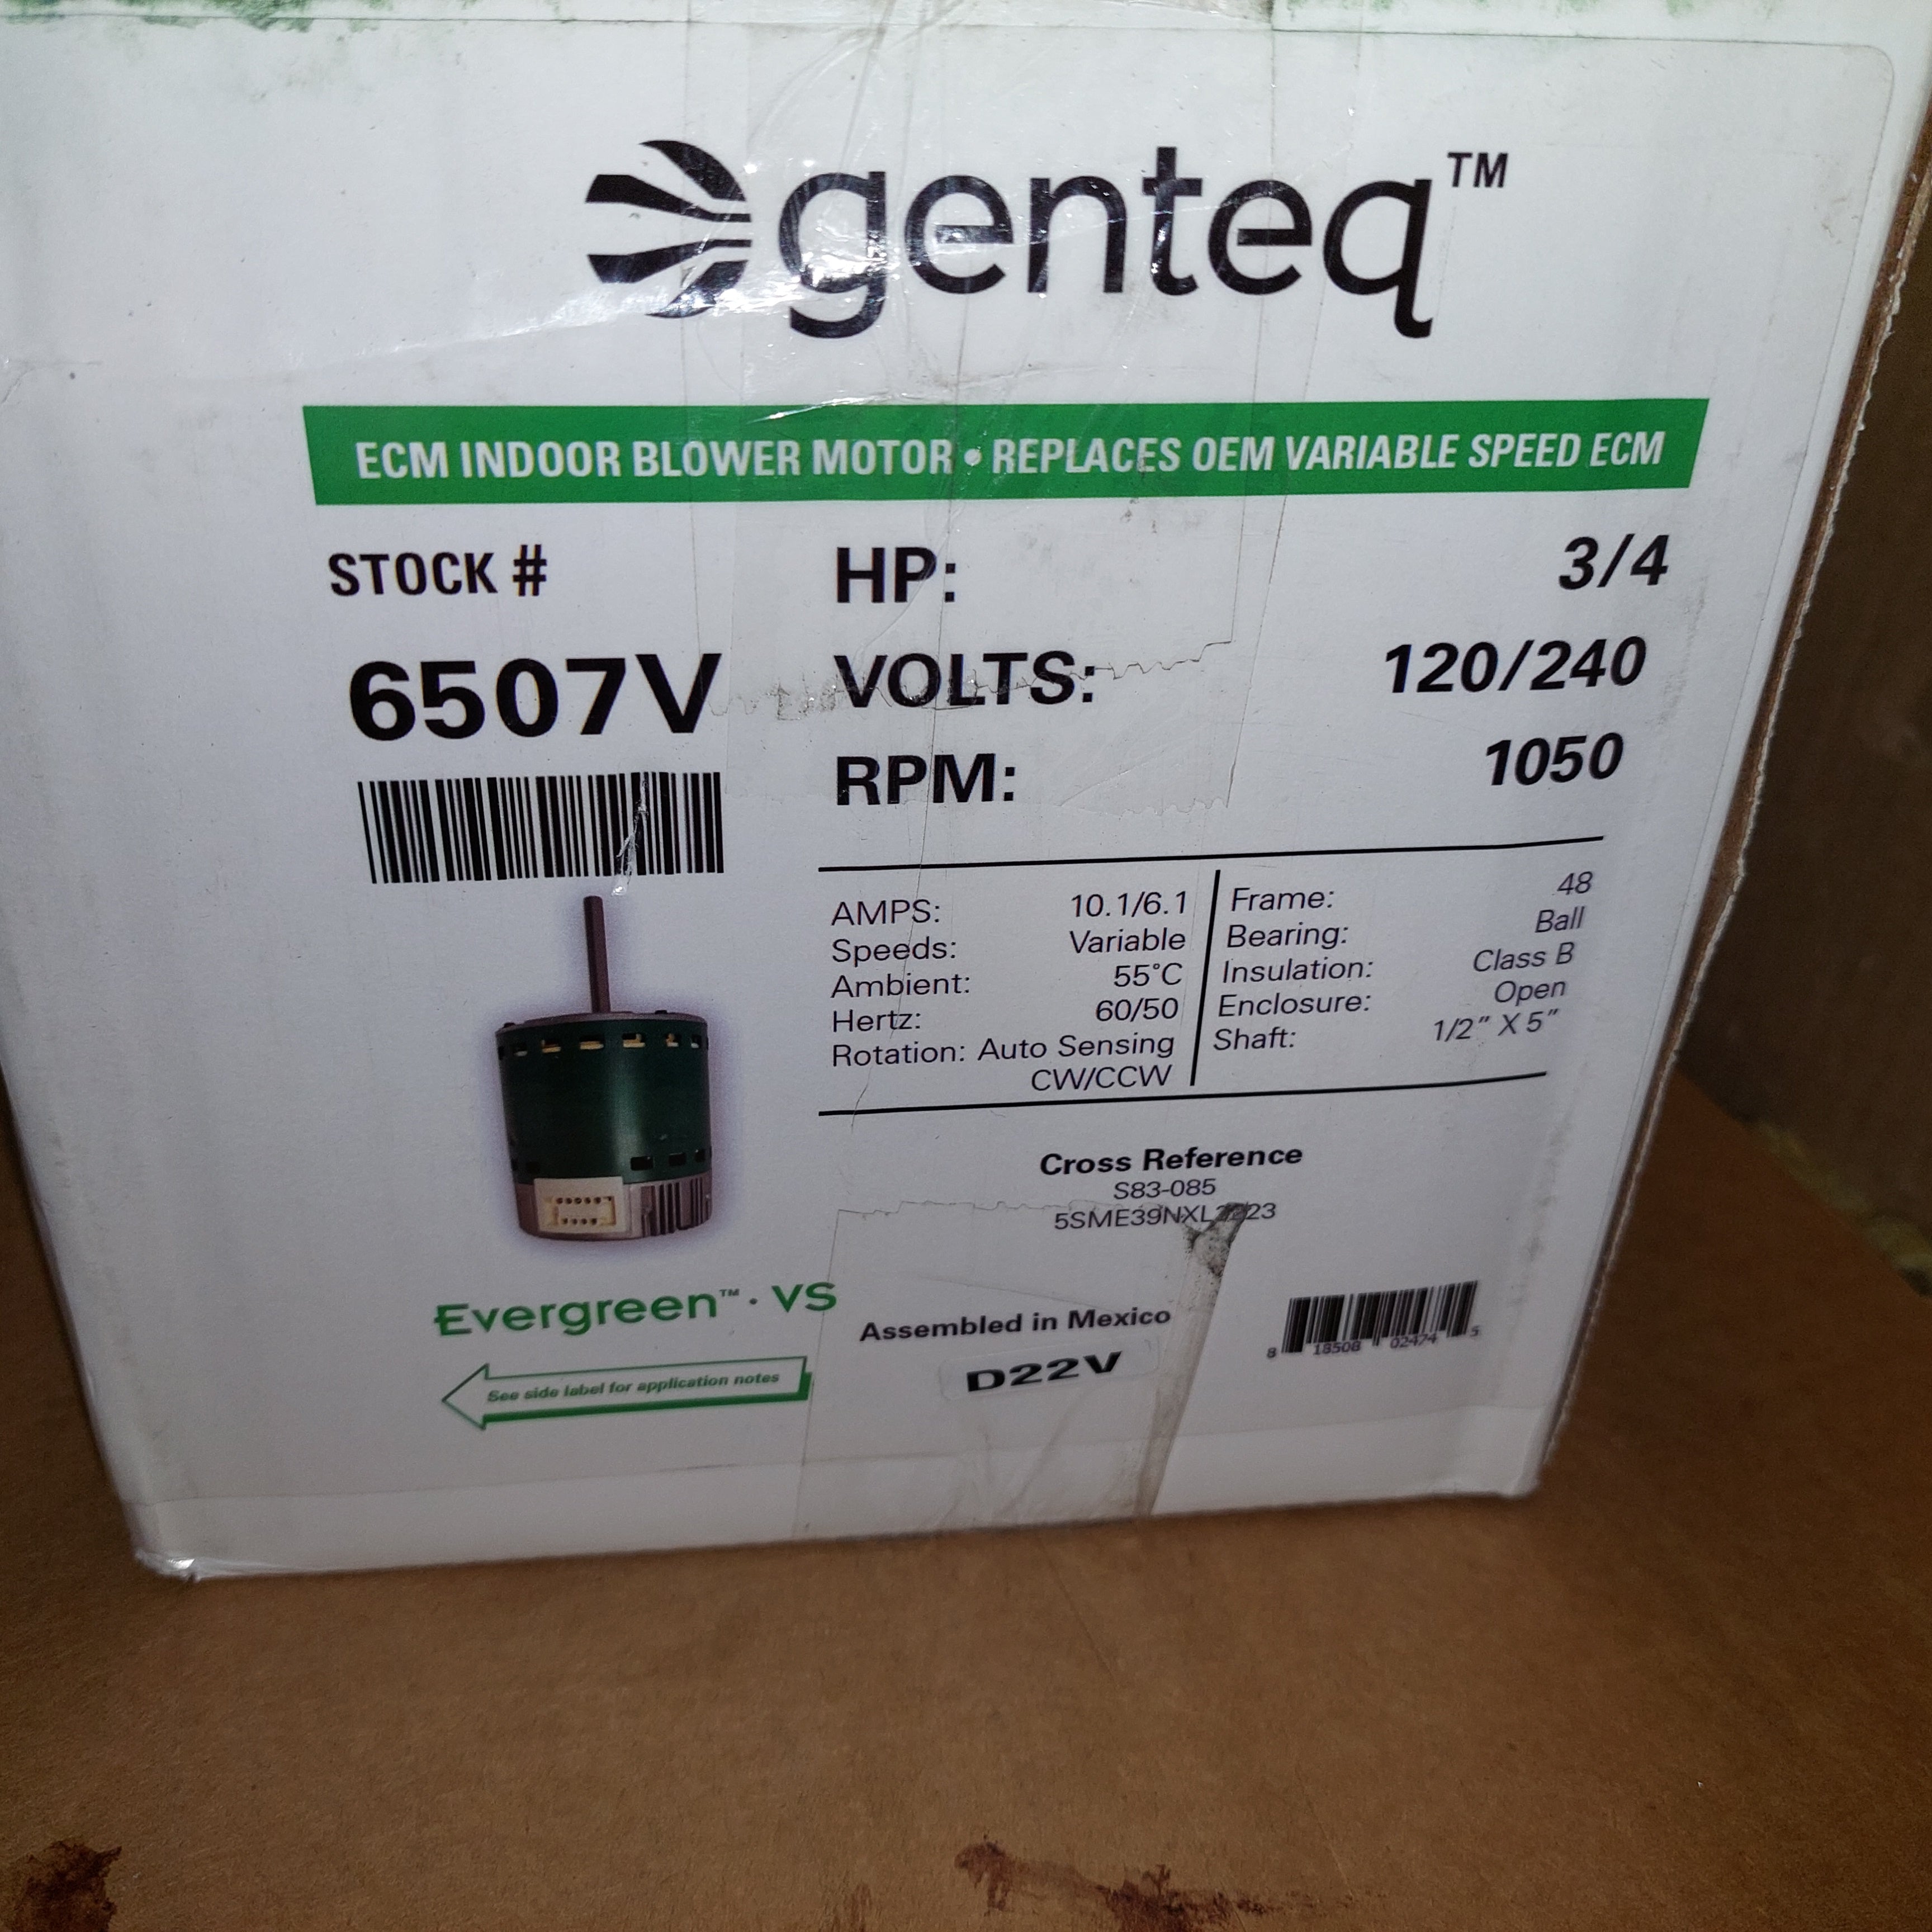 Genteq 6507V, S83-085, 5SME39NXL3223, 3/4HP, 120/240, Evergreen Motor New